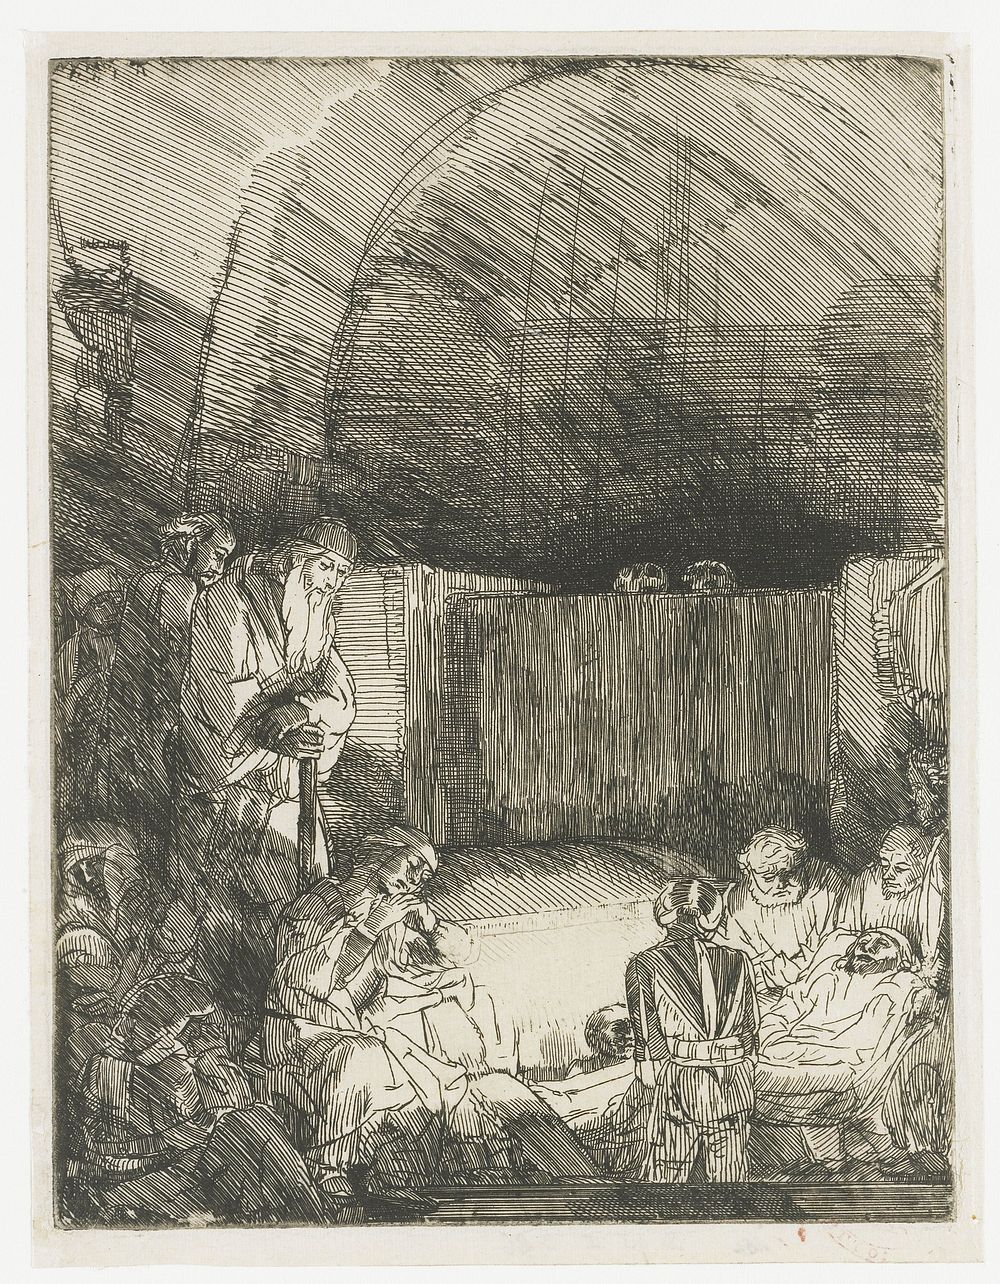 The Entombment (c. 1654) by Rembrandt van Rijn and Rembrandt van Rijn